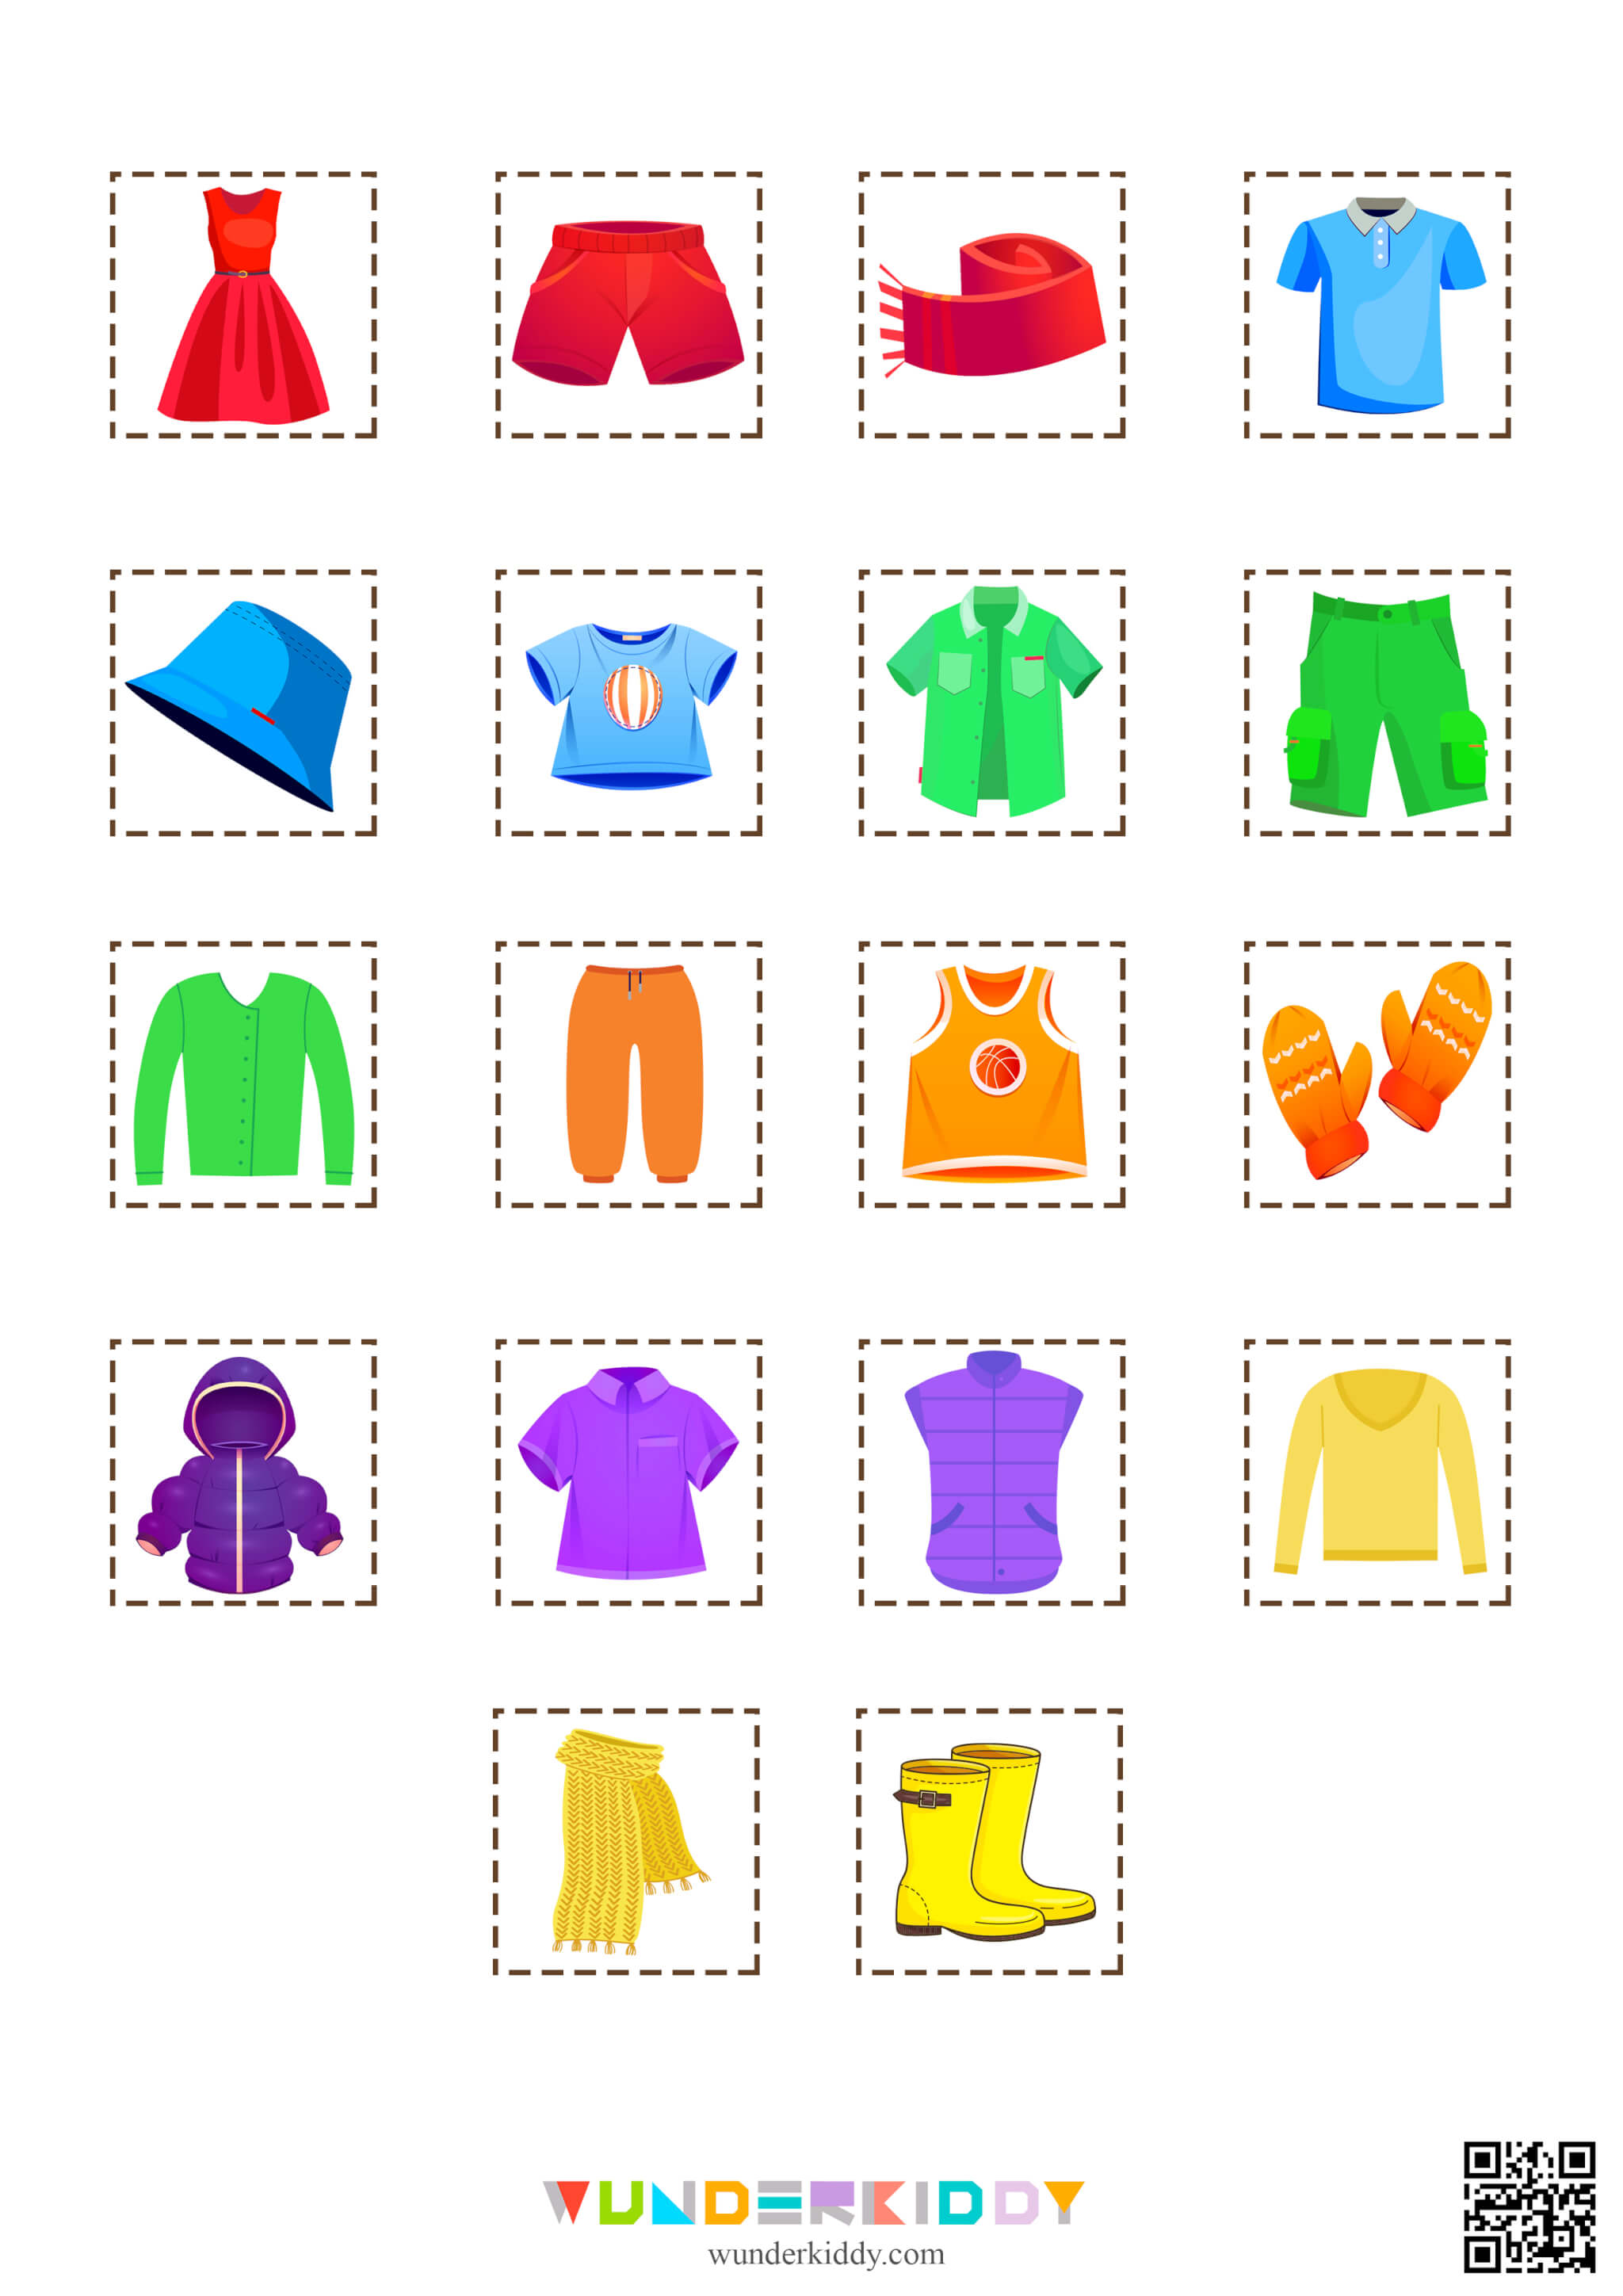 Учим цвета в игре для малышей «Шкафы для одежды» - Изображение 4